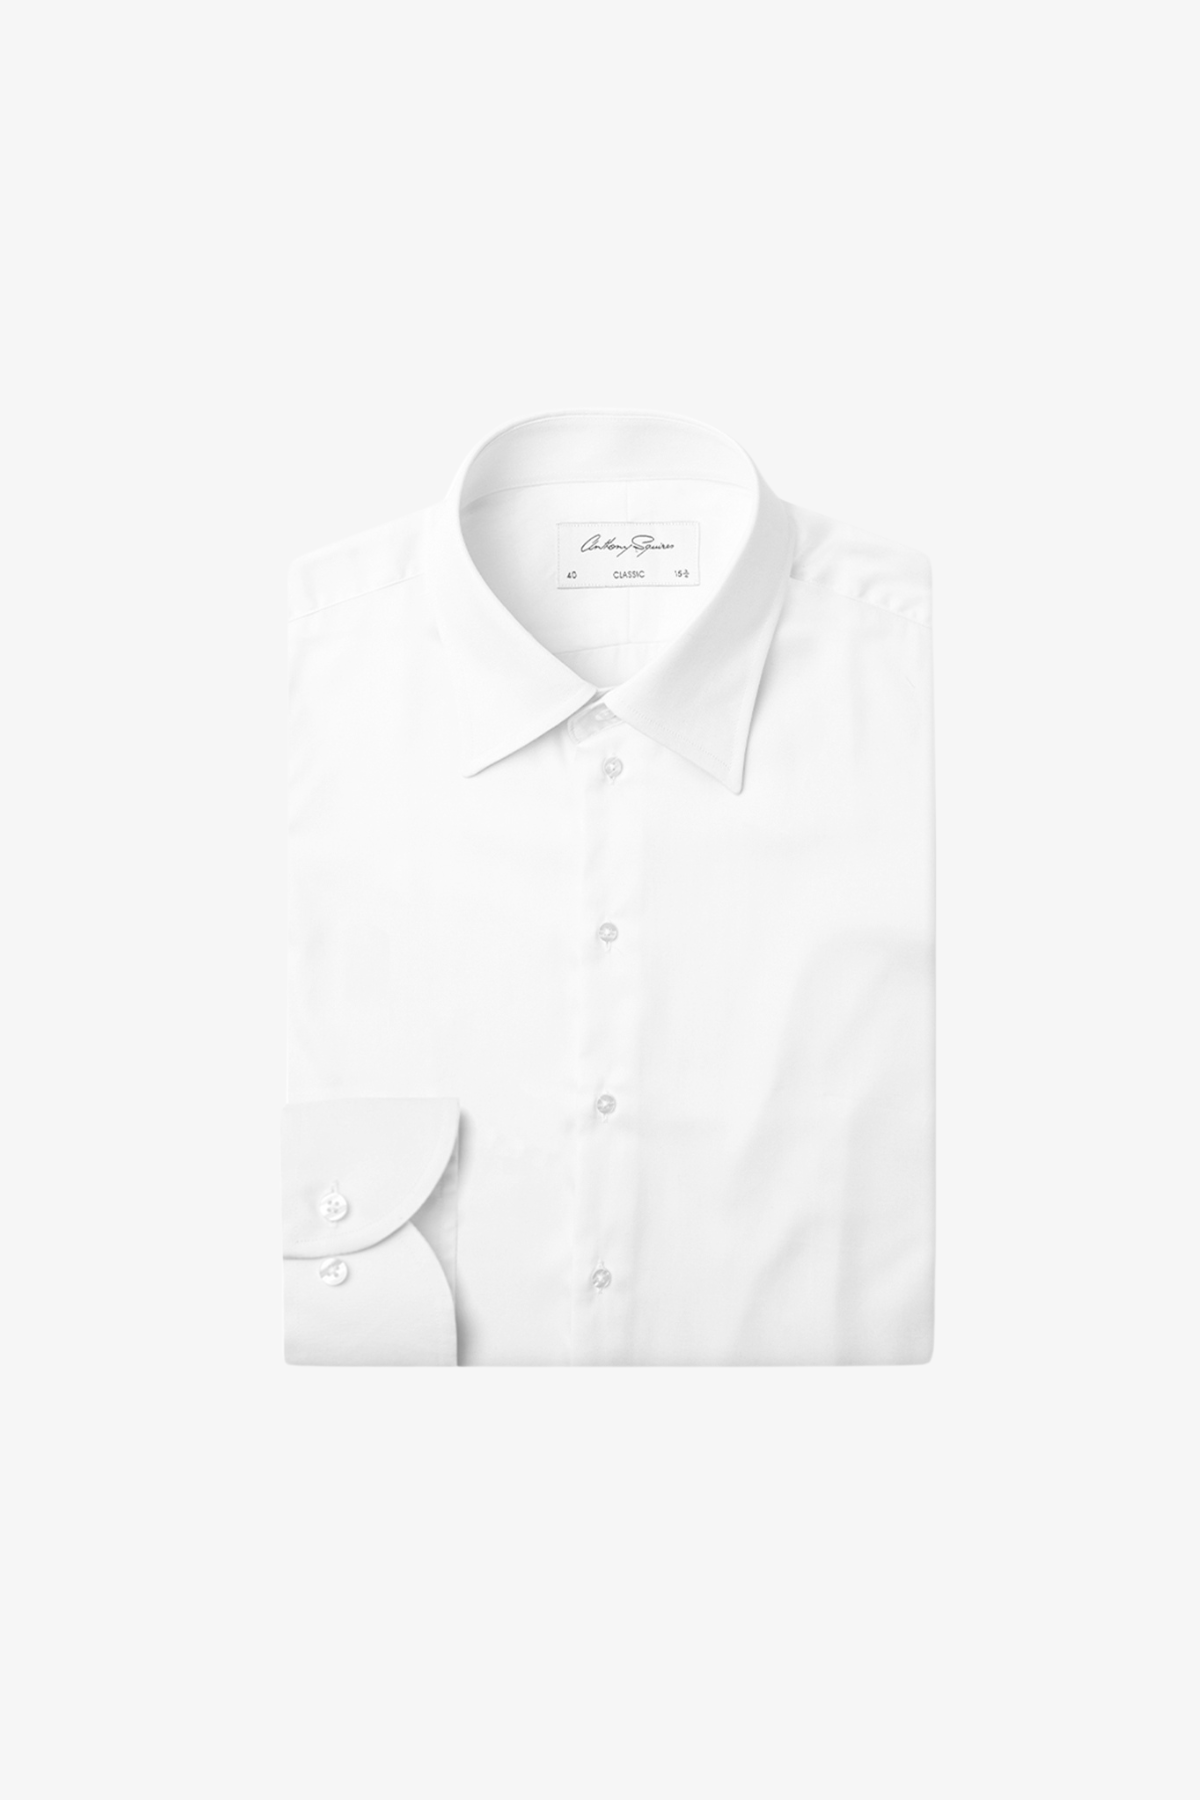 Gus - White Business shirt